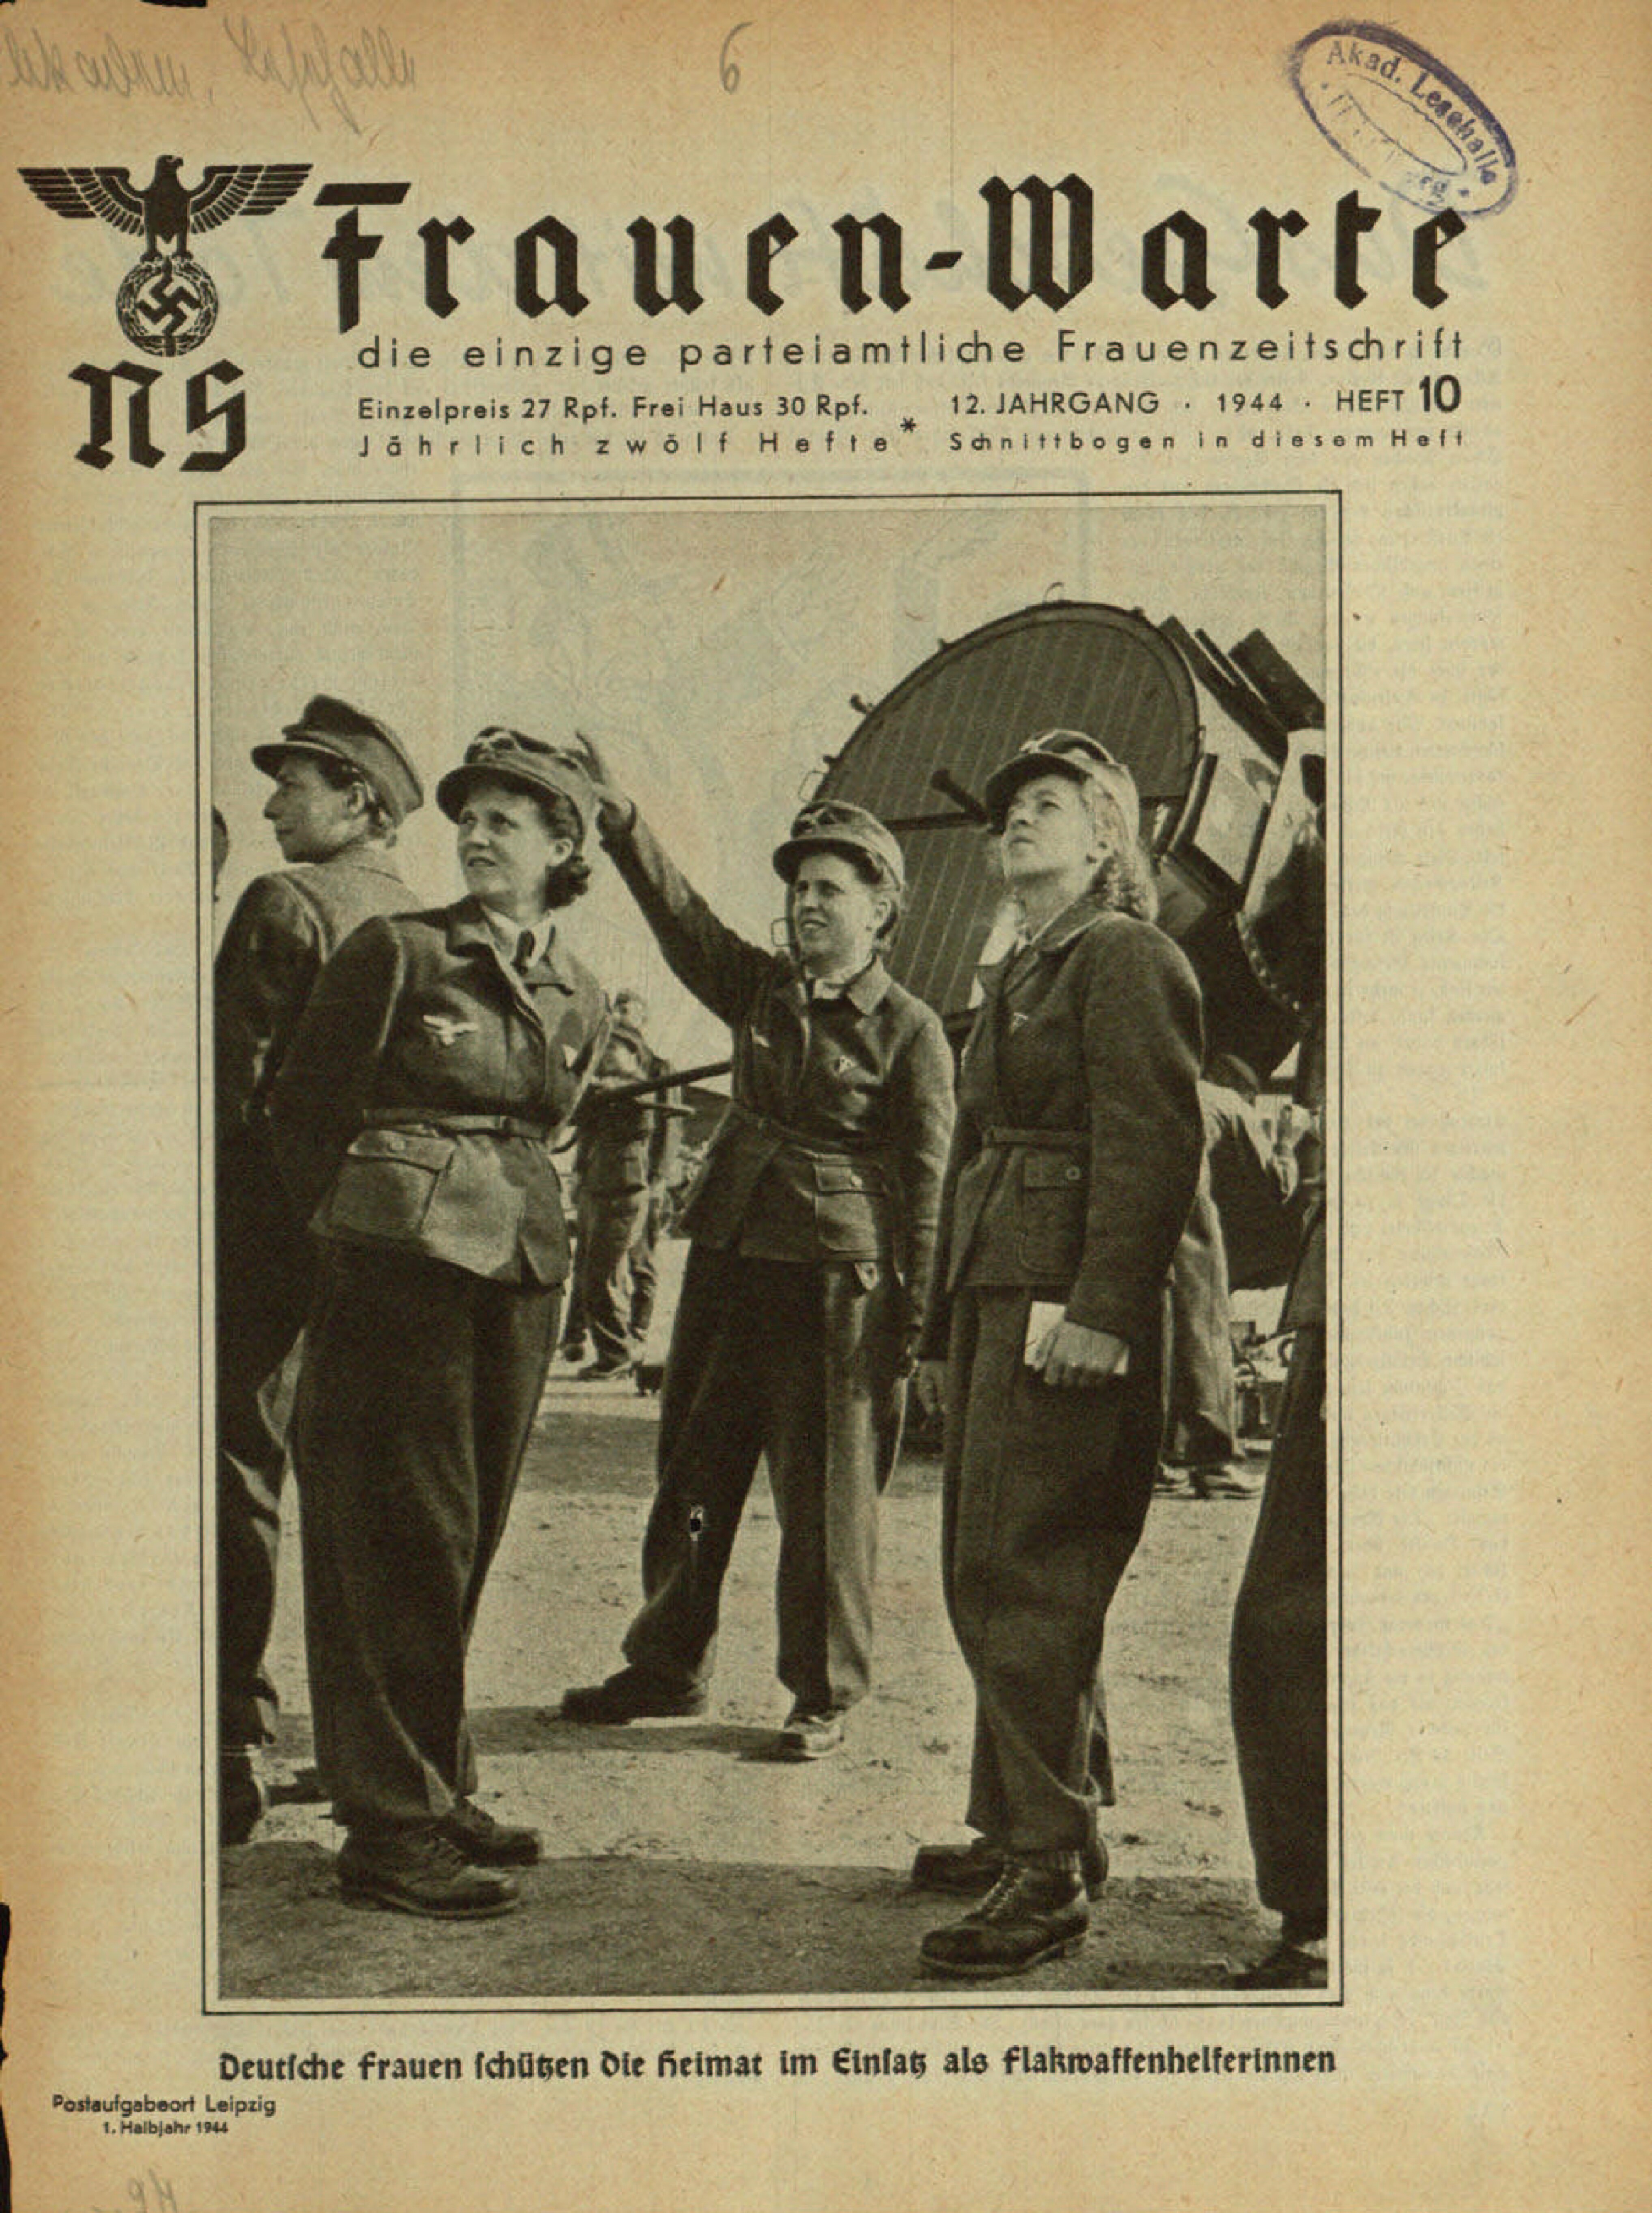 Frauen-Warte 12. Jahrgang Heft 10 (1944, 16 S., Scan, Fraktur)